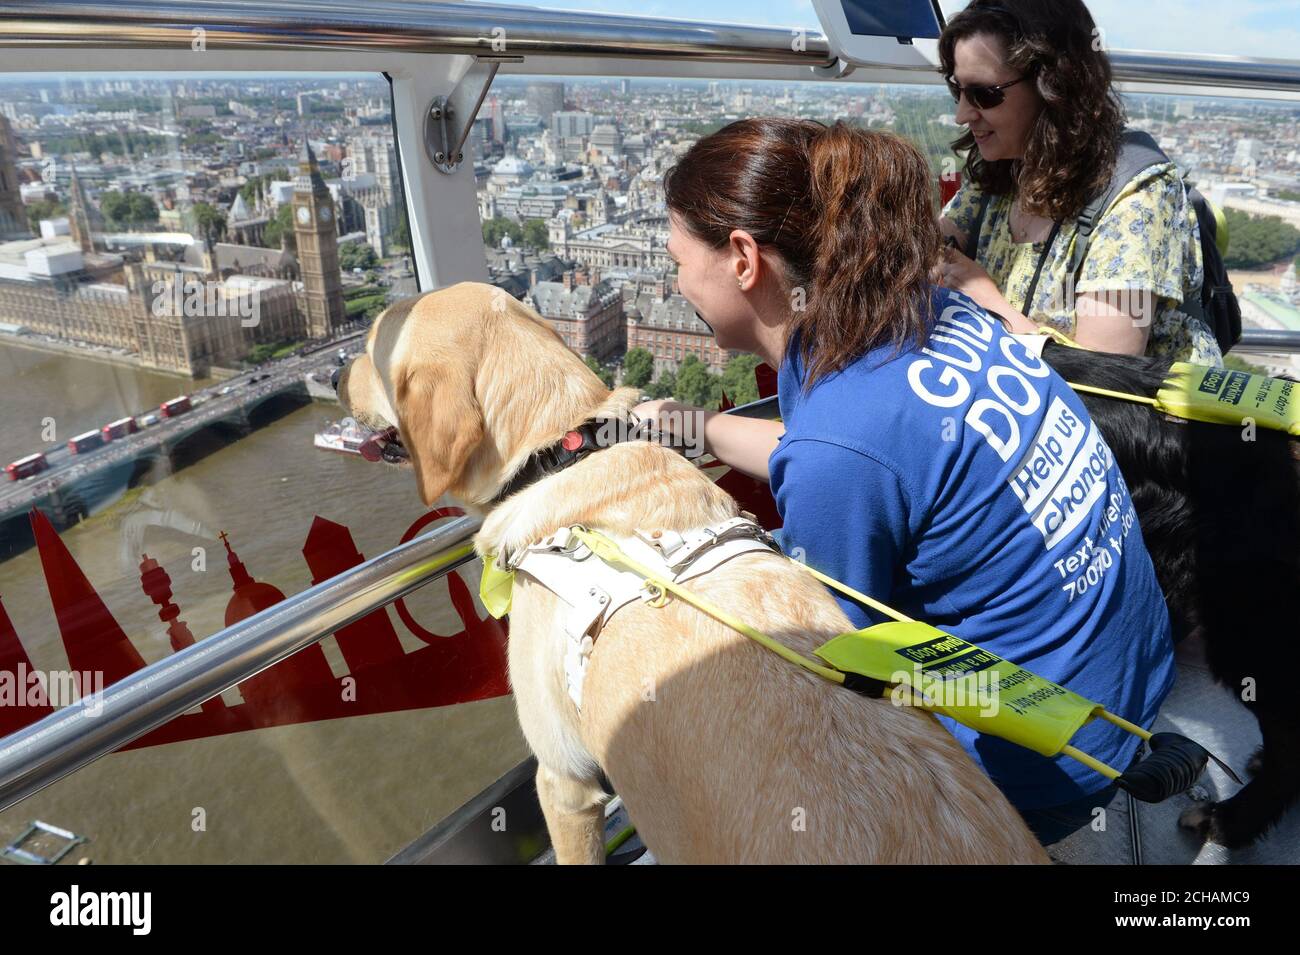 Voluntarios de la rama Medway de perros guía para ciegos tomando un paseo en el London Eye con sus cachorros en entrenamiento. Foto de stock